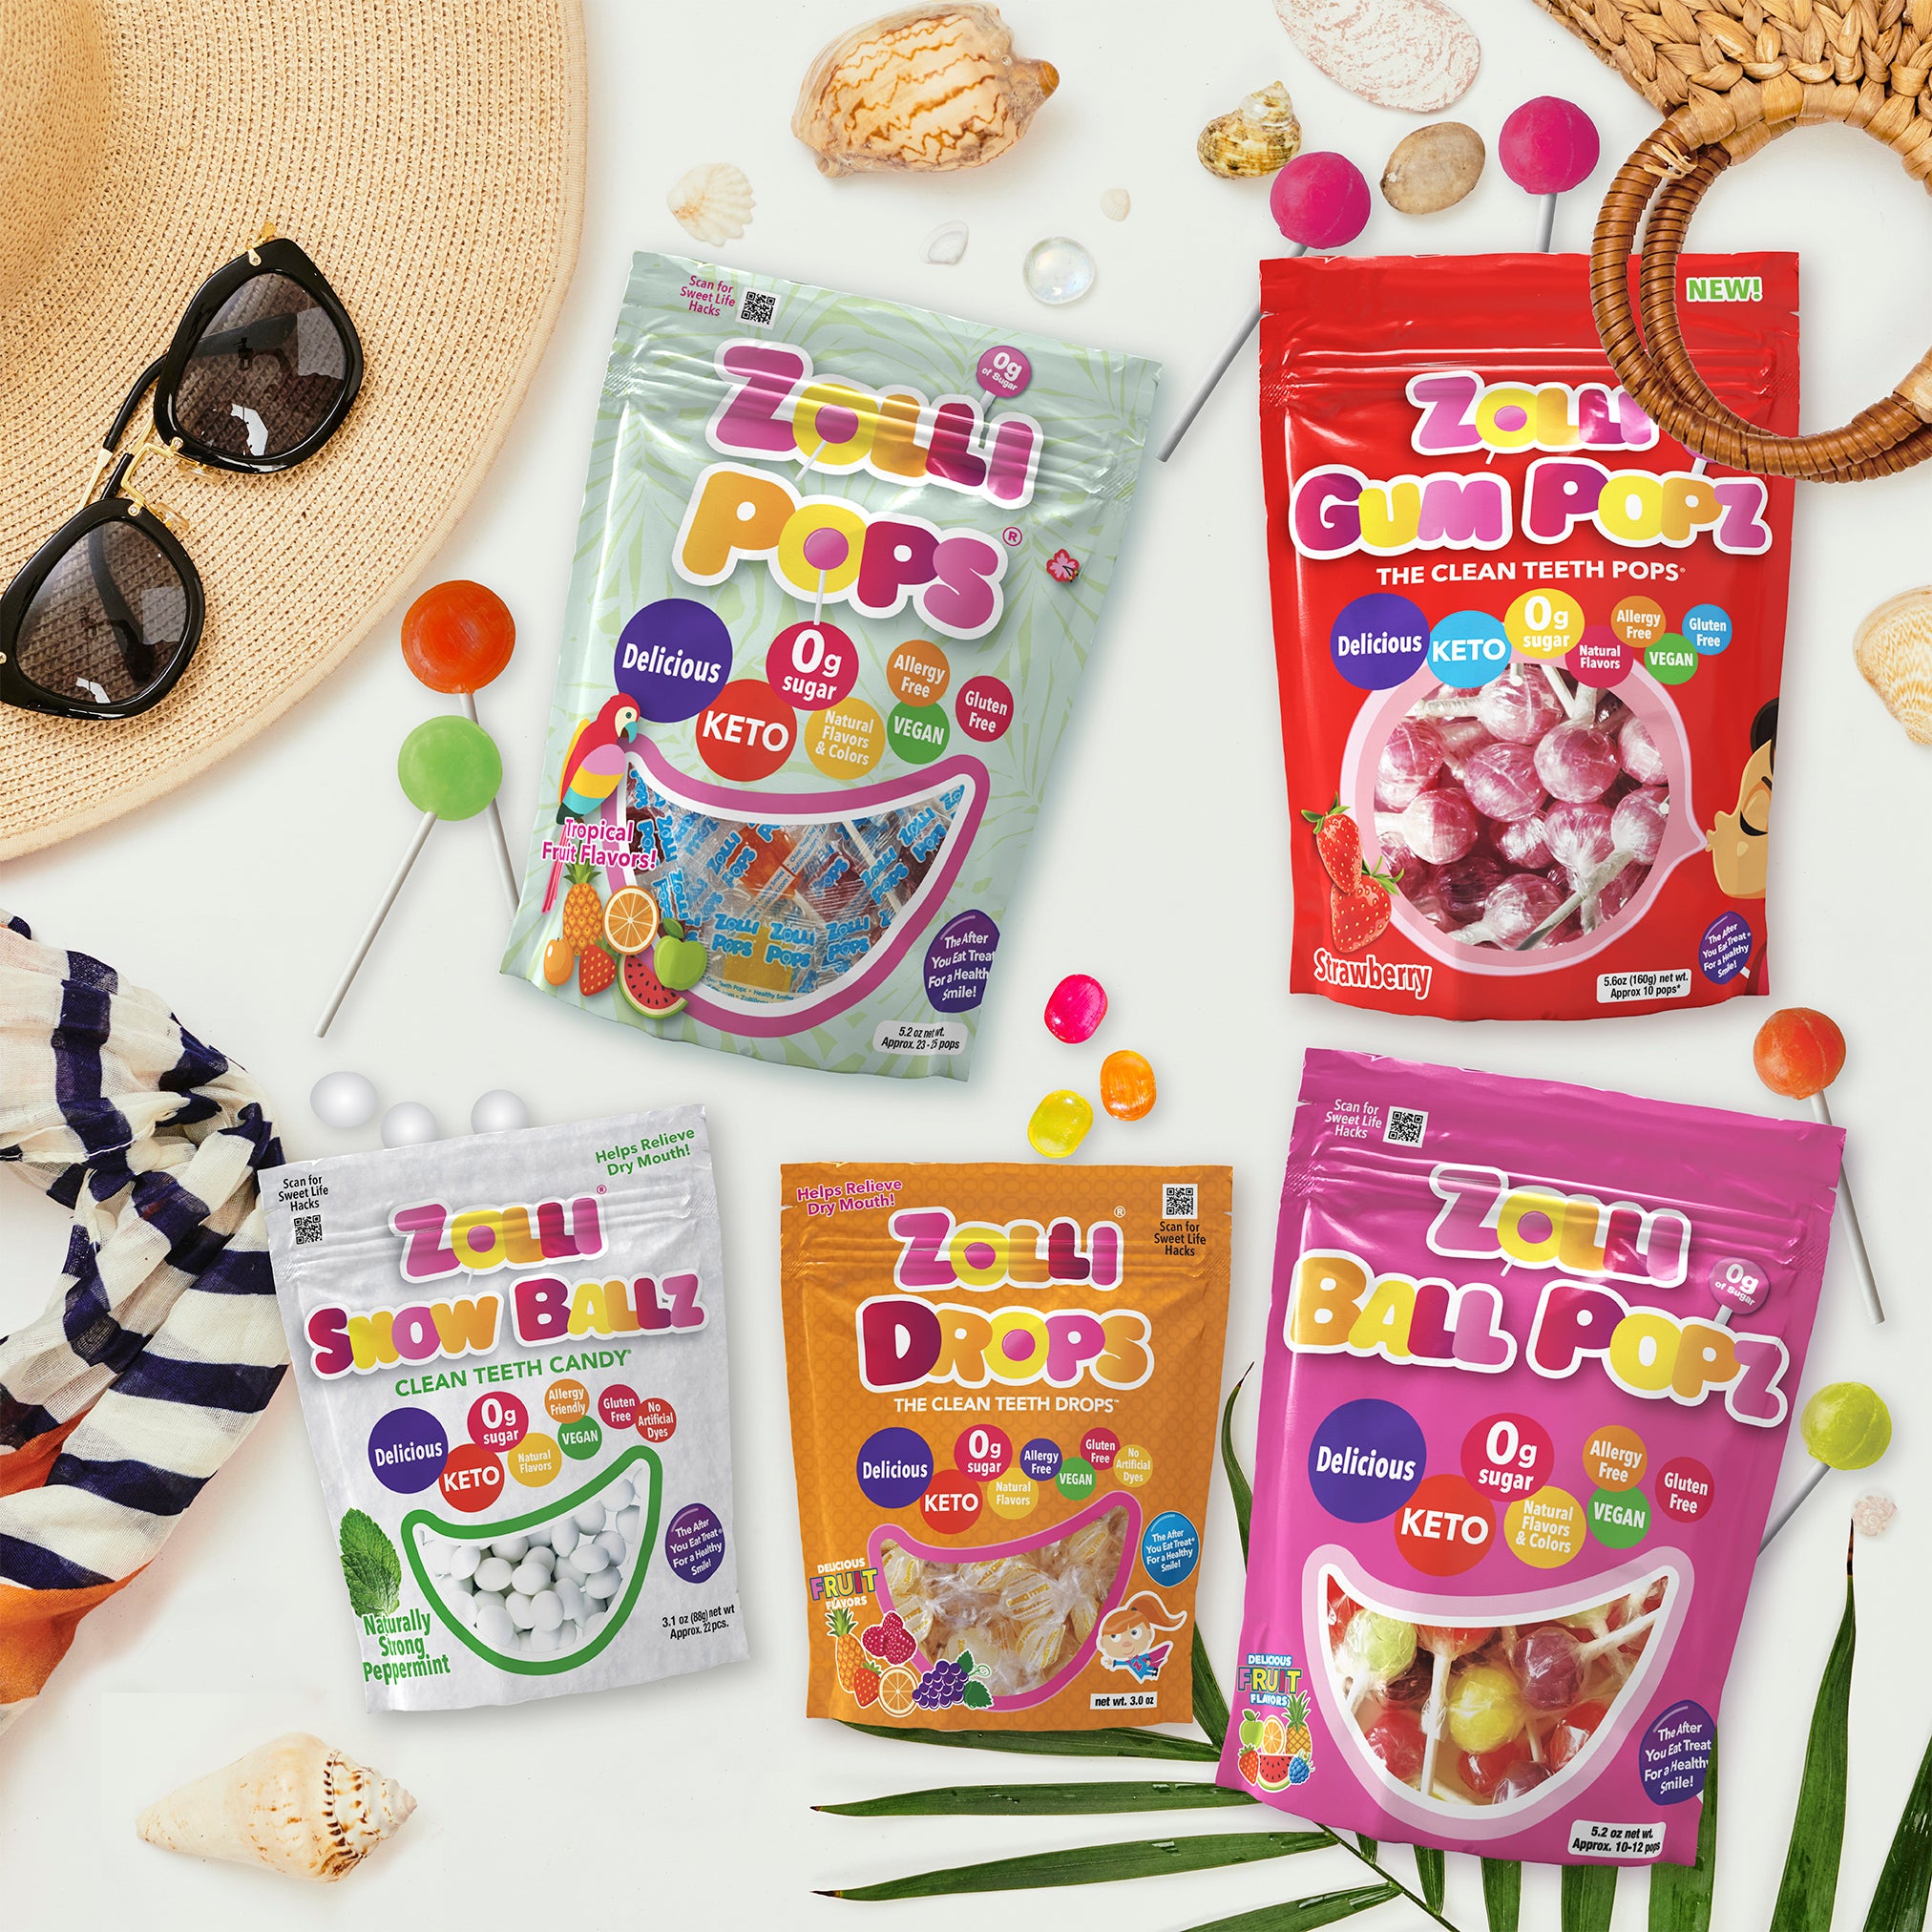 Zolli Hard Candy Bundle includes Zollipops Tropical Lollipops, Zolli Ball Pops, Zolli Fruit Drops, Zolli Gum Popz, and Zolli Snow Ballz mints.